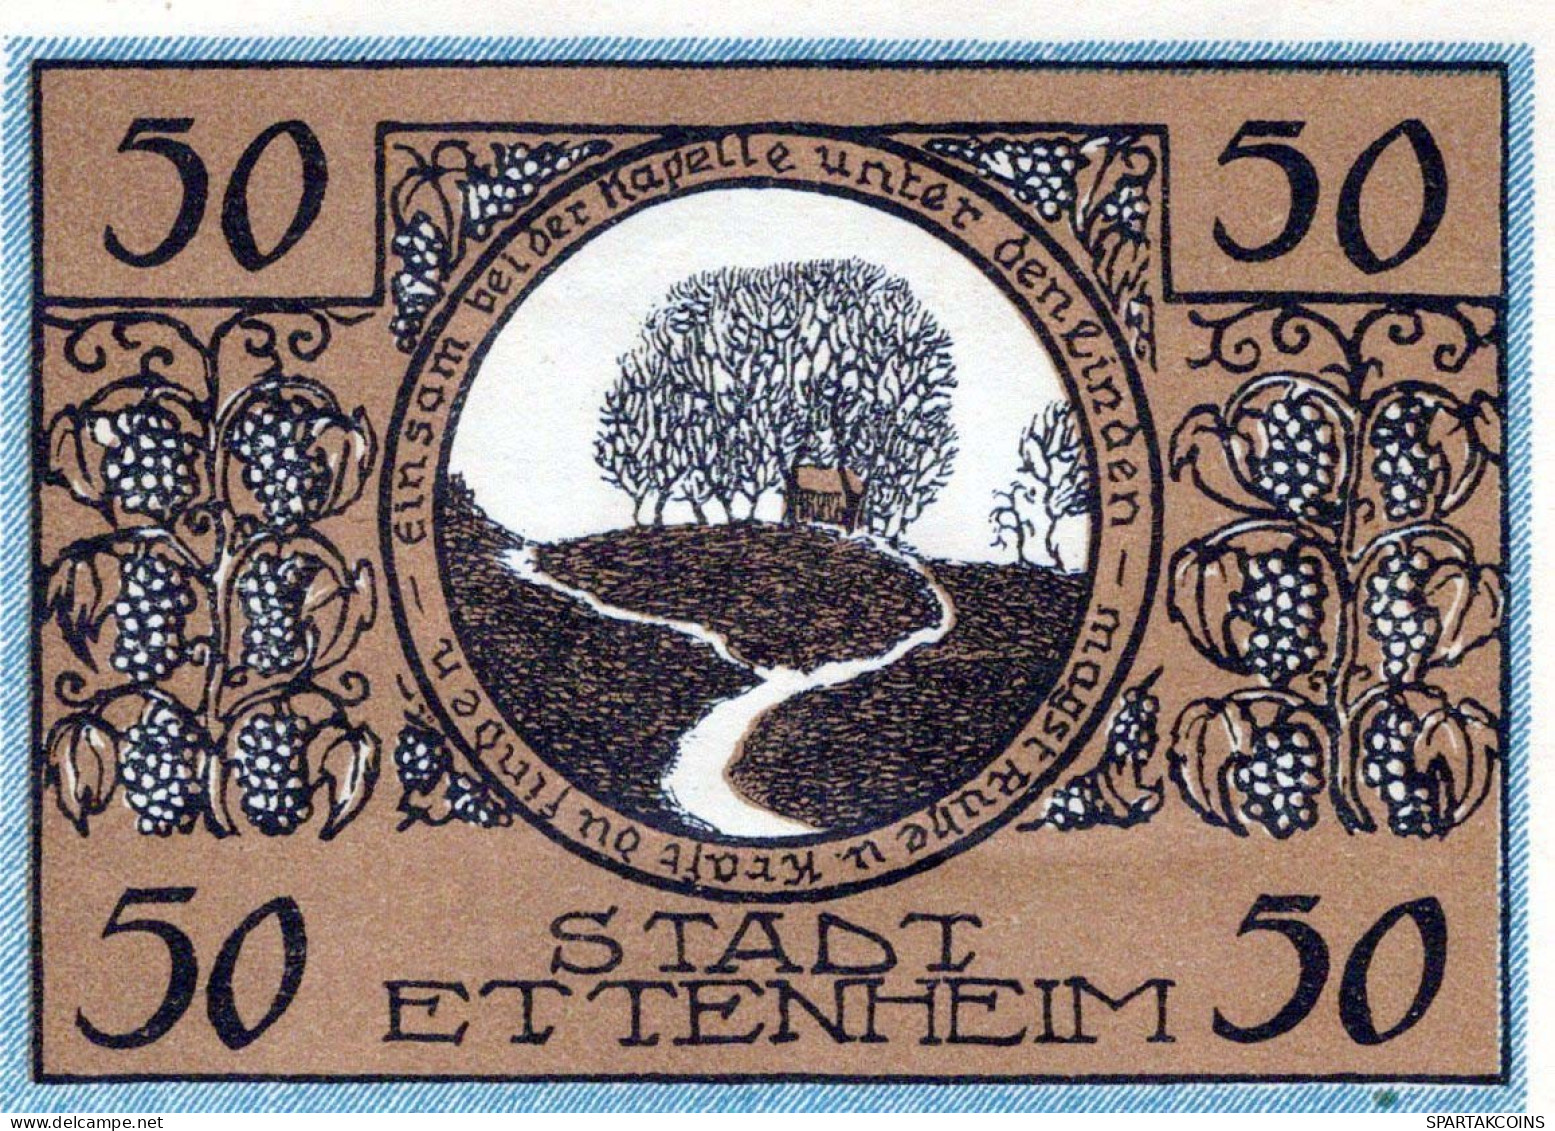 50 PFENNIG 1921 Stadt ETTENHEIM Baden UNC DEUTSCHLAND Notgeld Banknote #PB359 - [11] Local Banknote Issues